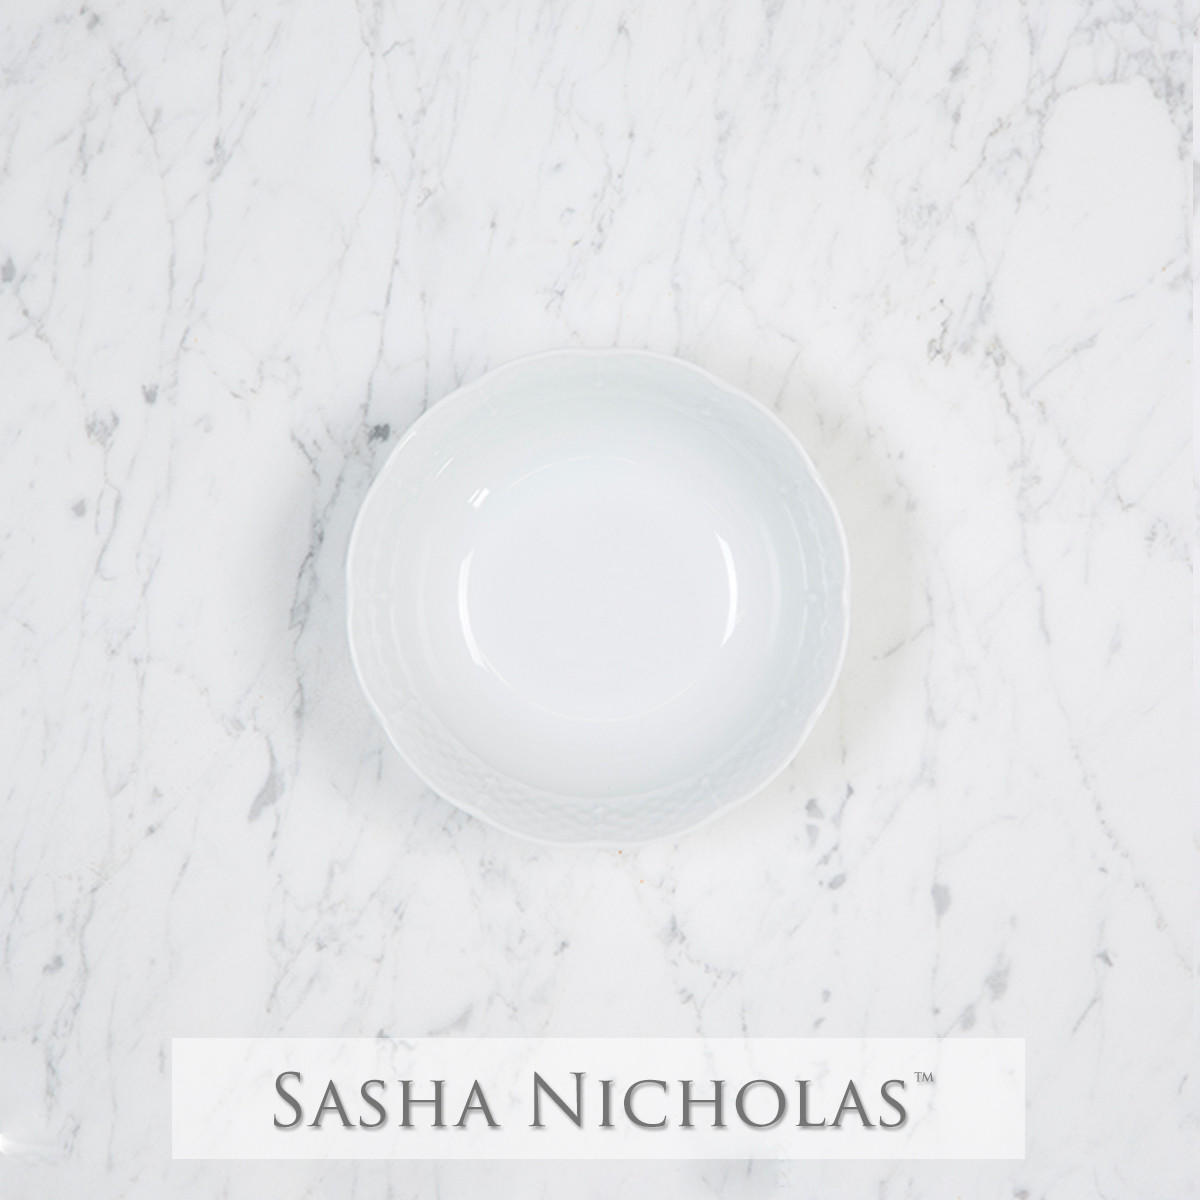 Weave Petite Bowl, SNW121, Sasha Nicholas